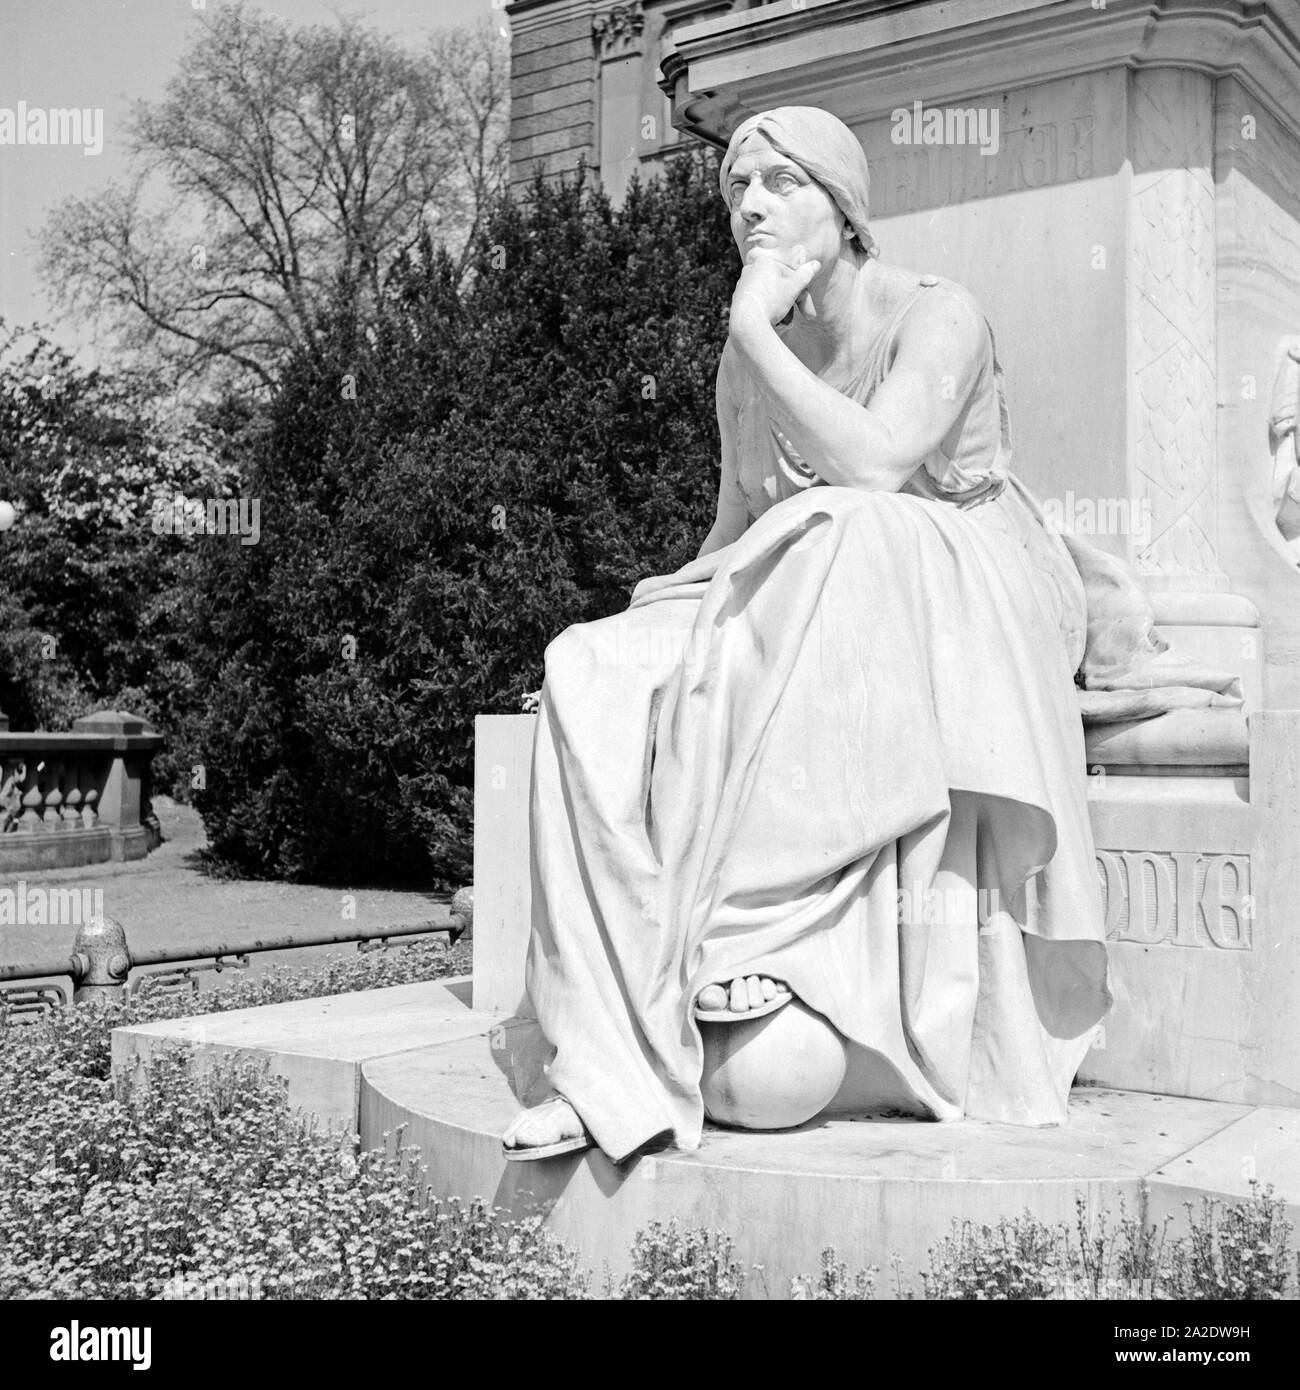 Frauenstatue Schillerdenkmals am Fuß des années 1930 à Wiesbaden, Deutschland er Jahre. Sculpture féminine sur la partie inférieure du monument de poète allemand Friedrich Schiller, Allemagne 1930. Banque D'Images